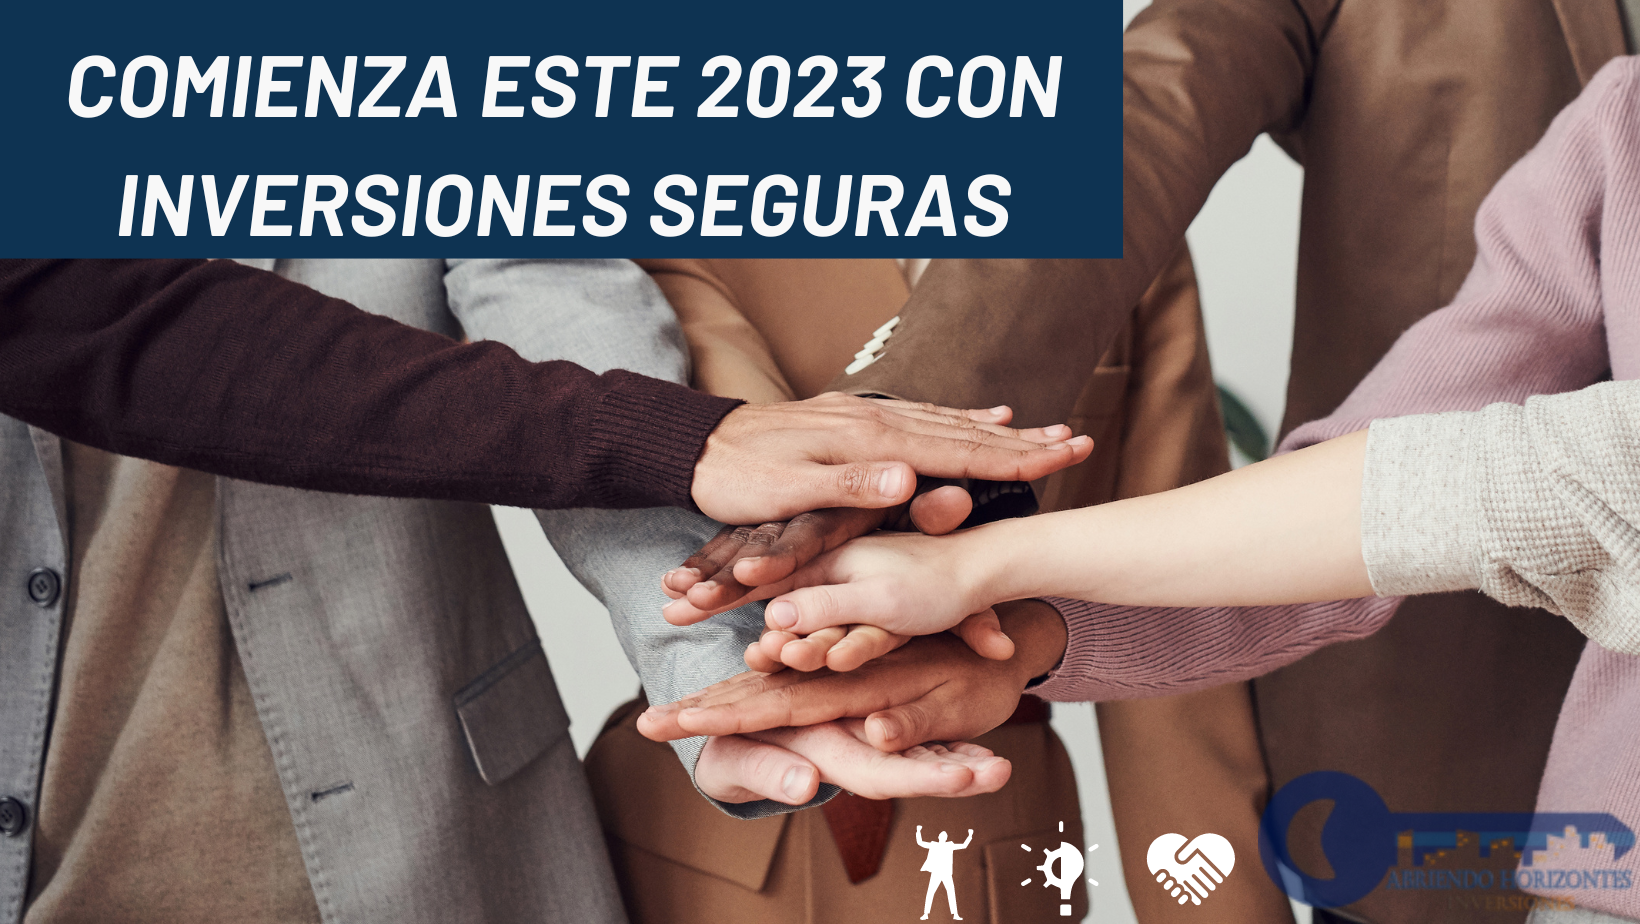 COMIENZA ESTE 2023 CON INVERSIONES SEGURAS